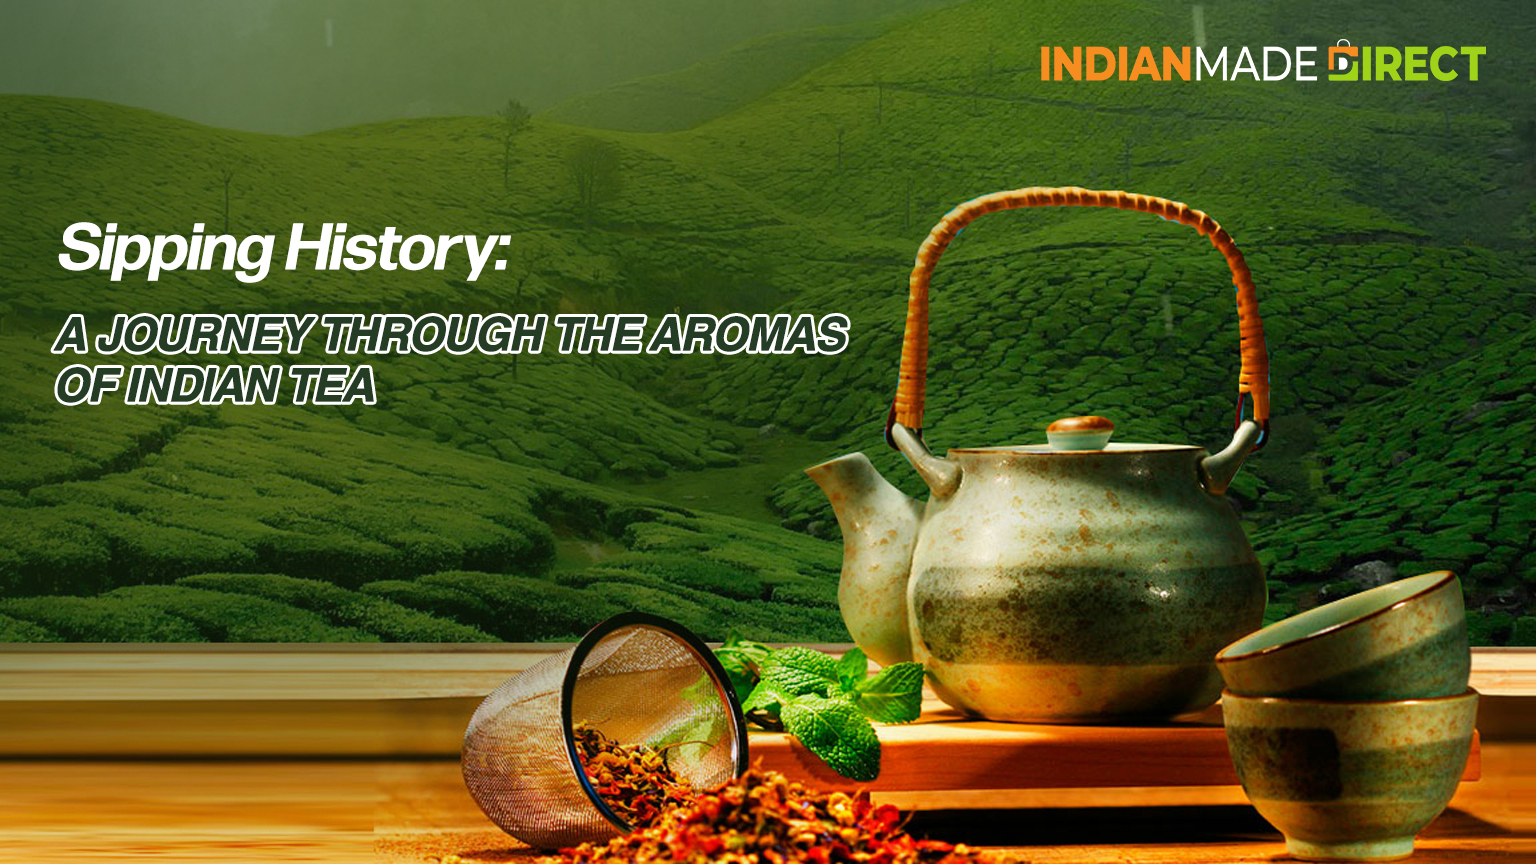 Aromas of Indian Tea